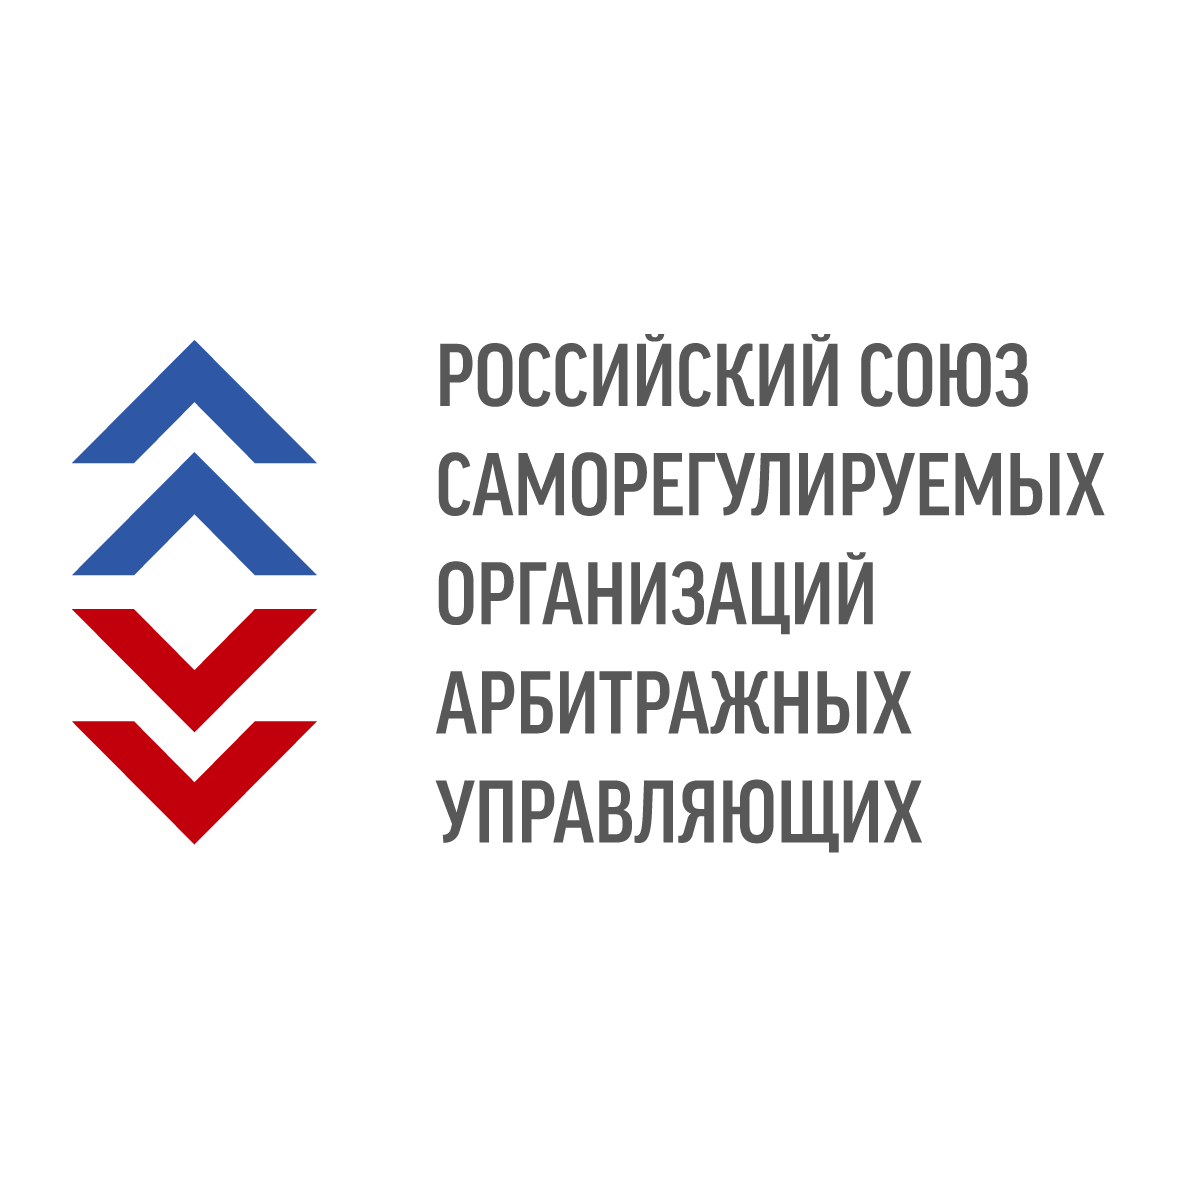 Российский союз саморегулируемых организаций арбитражных управляющих